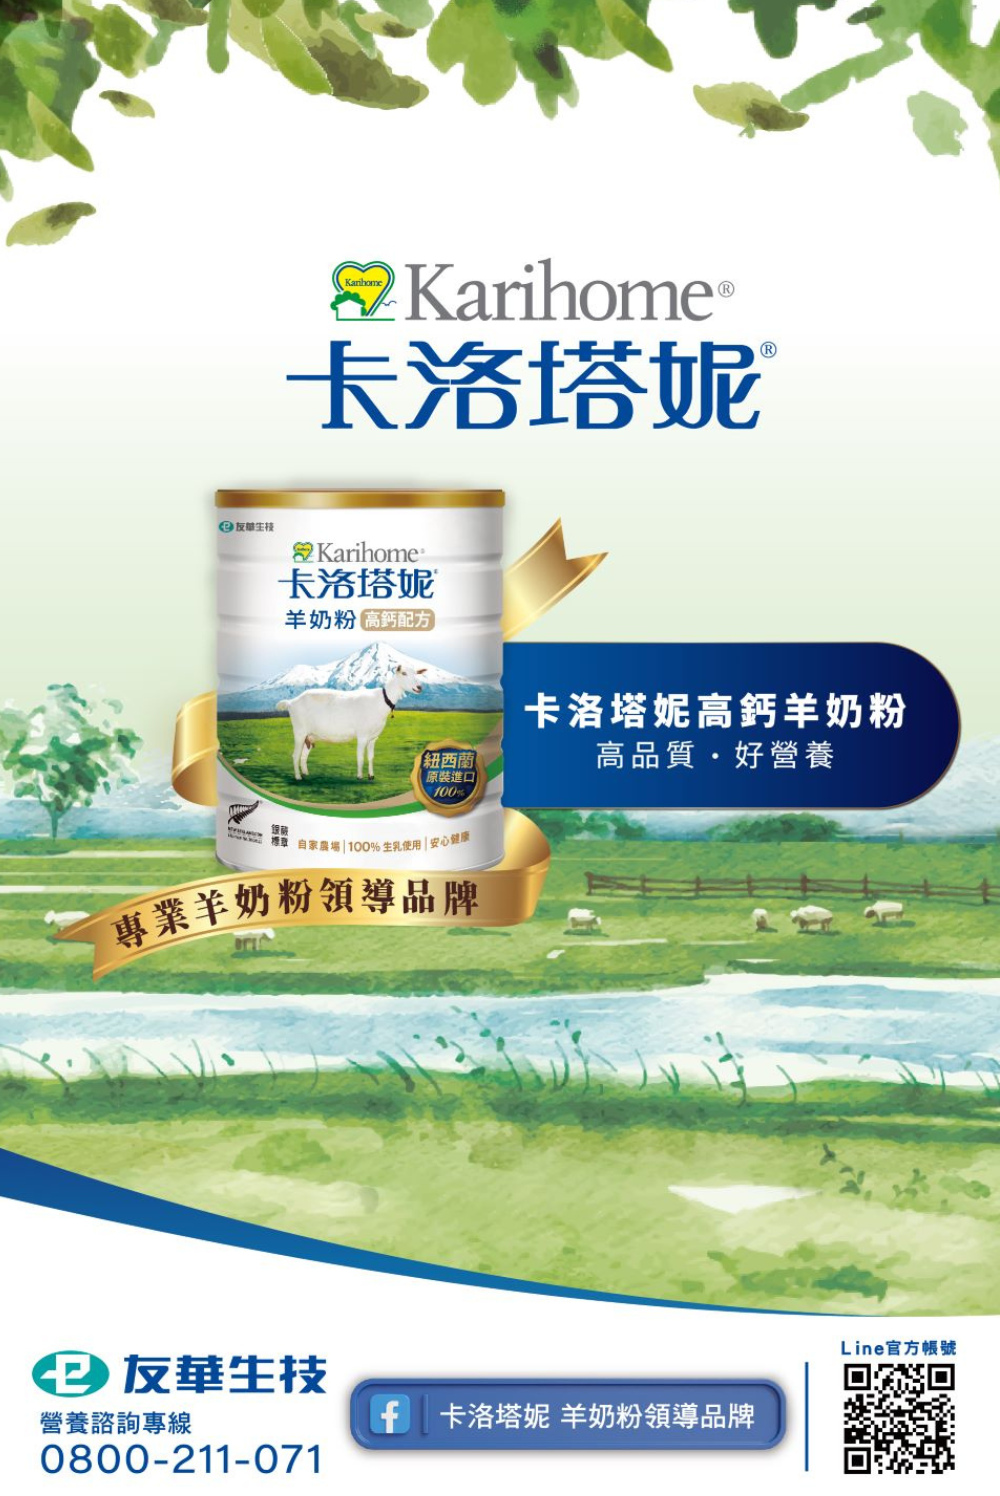 卡洛塔妮高鈣羊奶粉 高品質好營養 專業羊奶粉領導品牌